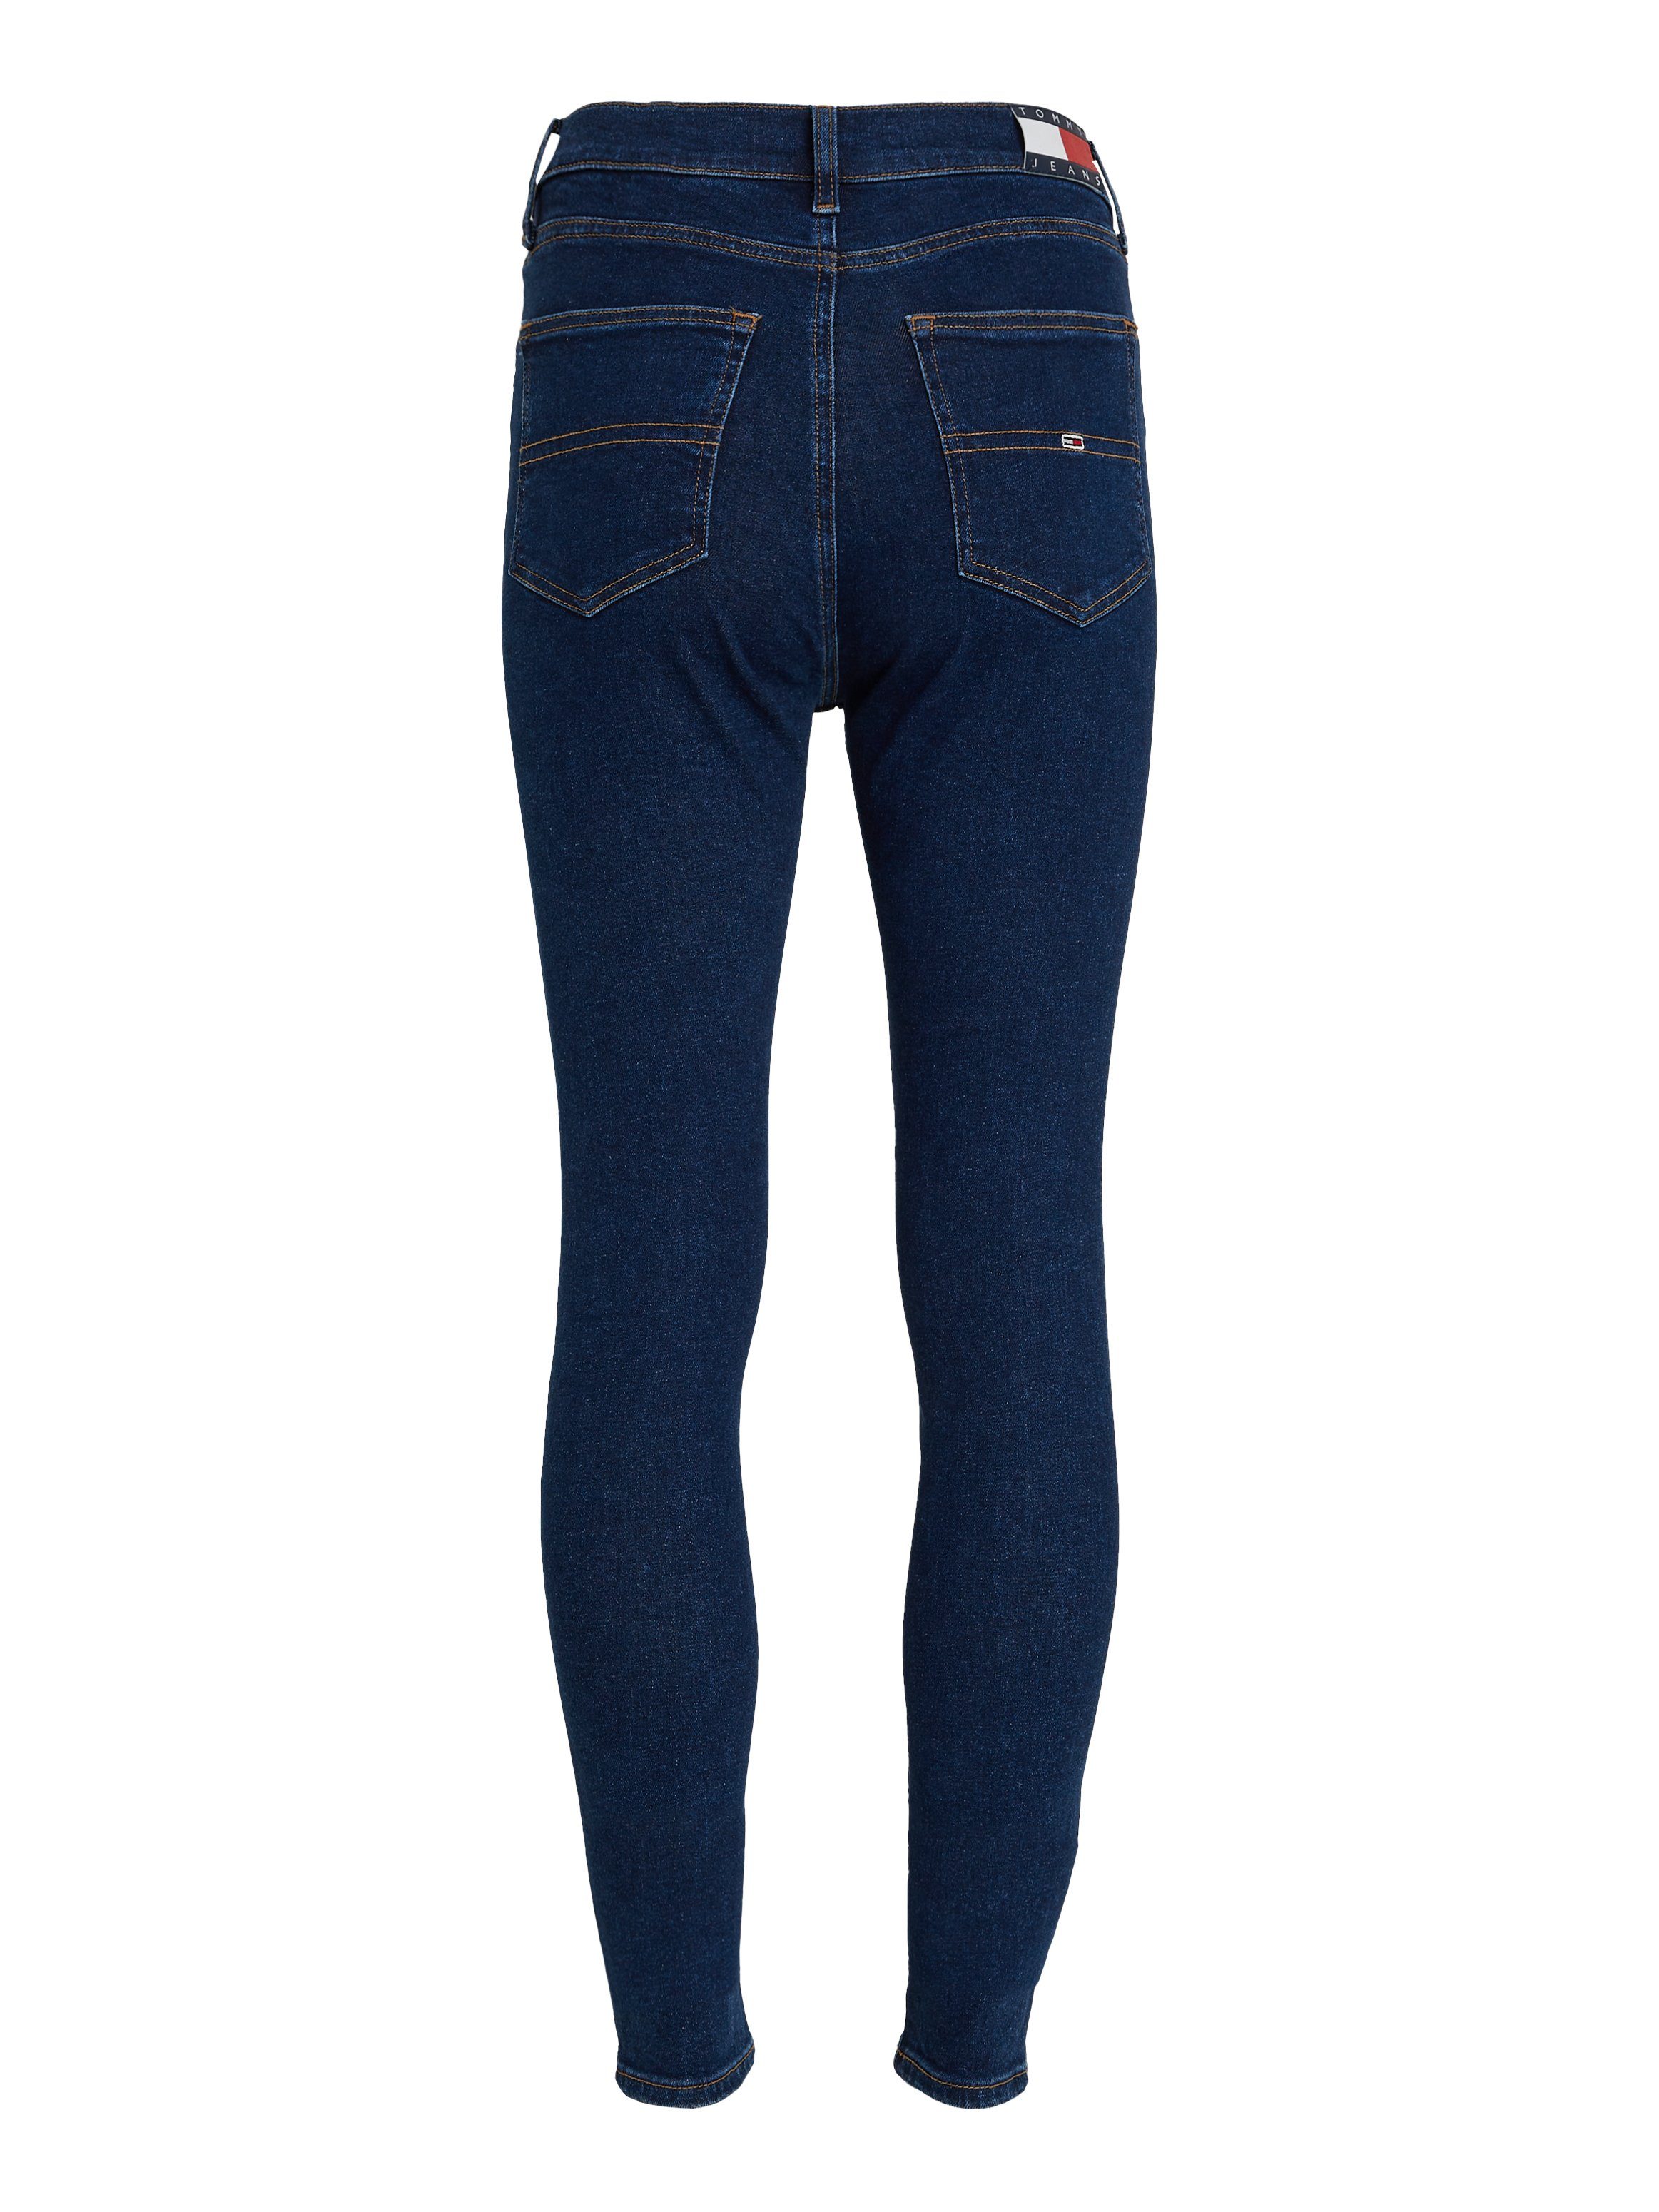 Jeans dark blue32 mit Tommy Sylvia Bequeme Jeans Ledermarkenlabel